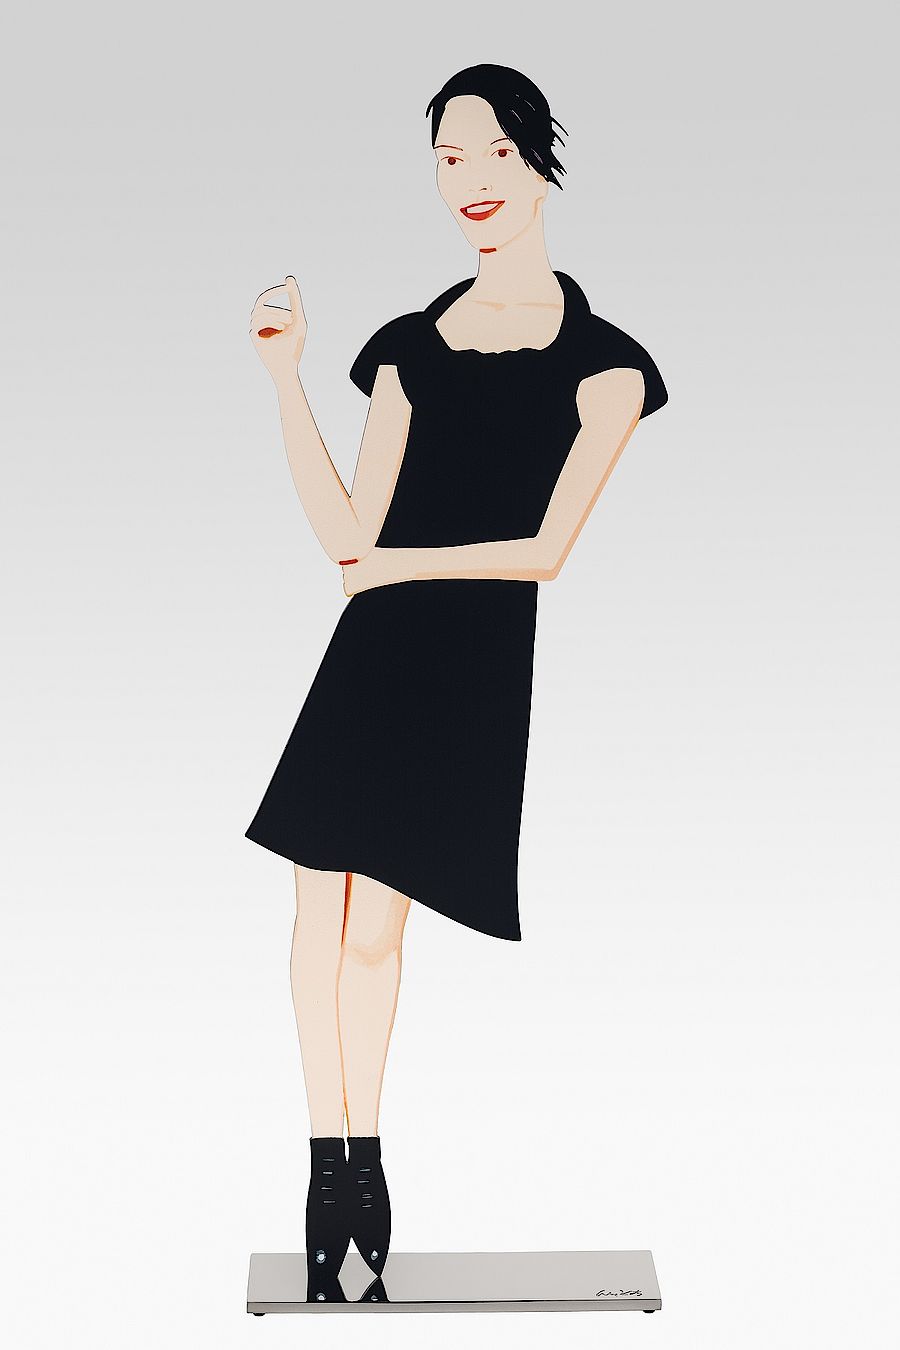 Korff Stiftung - Alex Katz - Skulpturen - Black Dress Cutouts